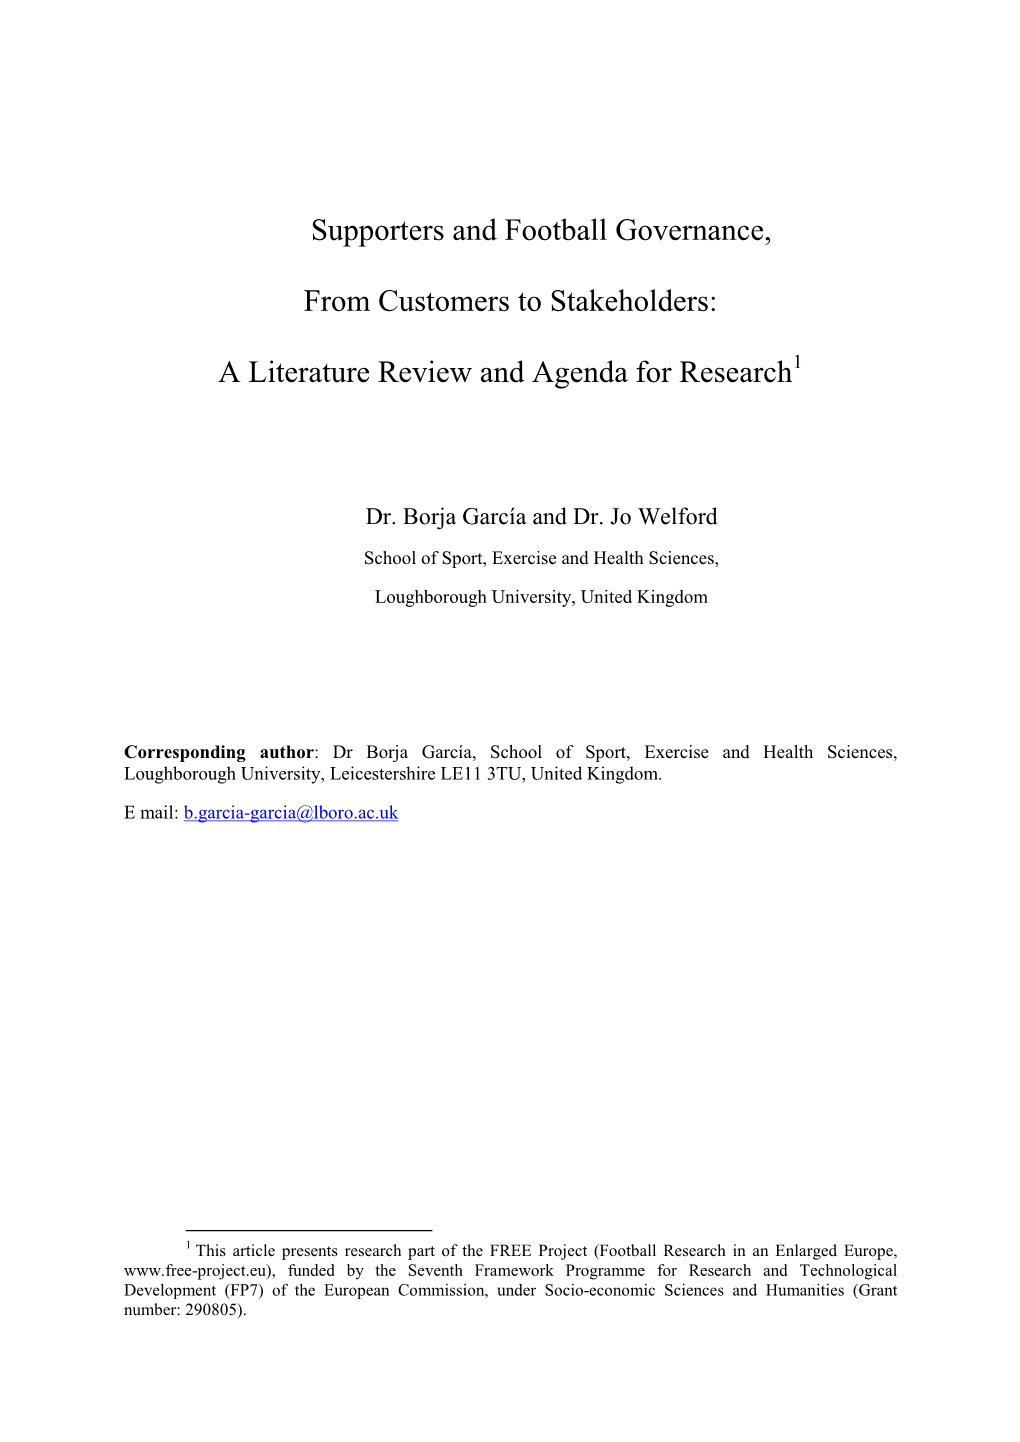 Loughborough Study Football Governance Review